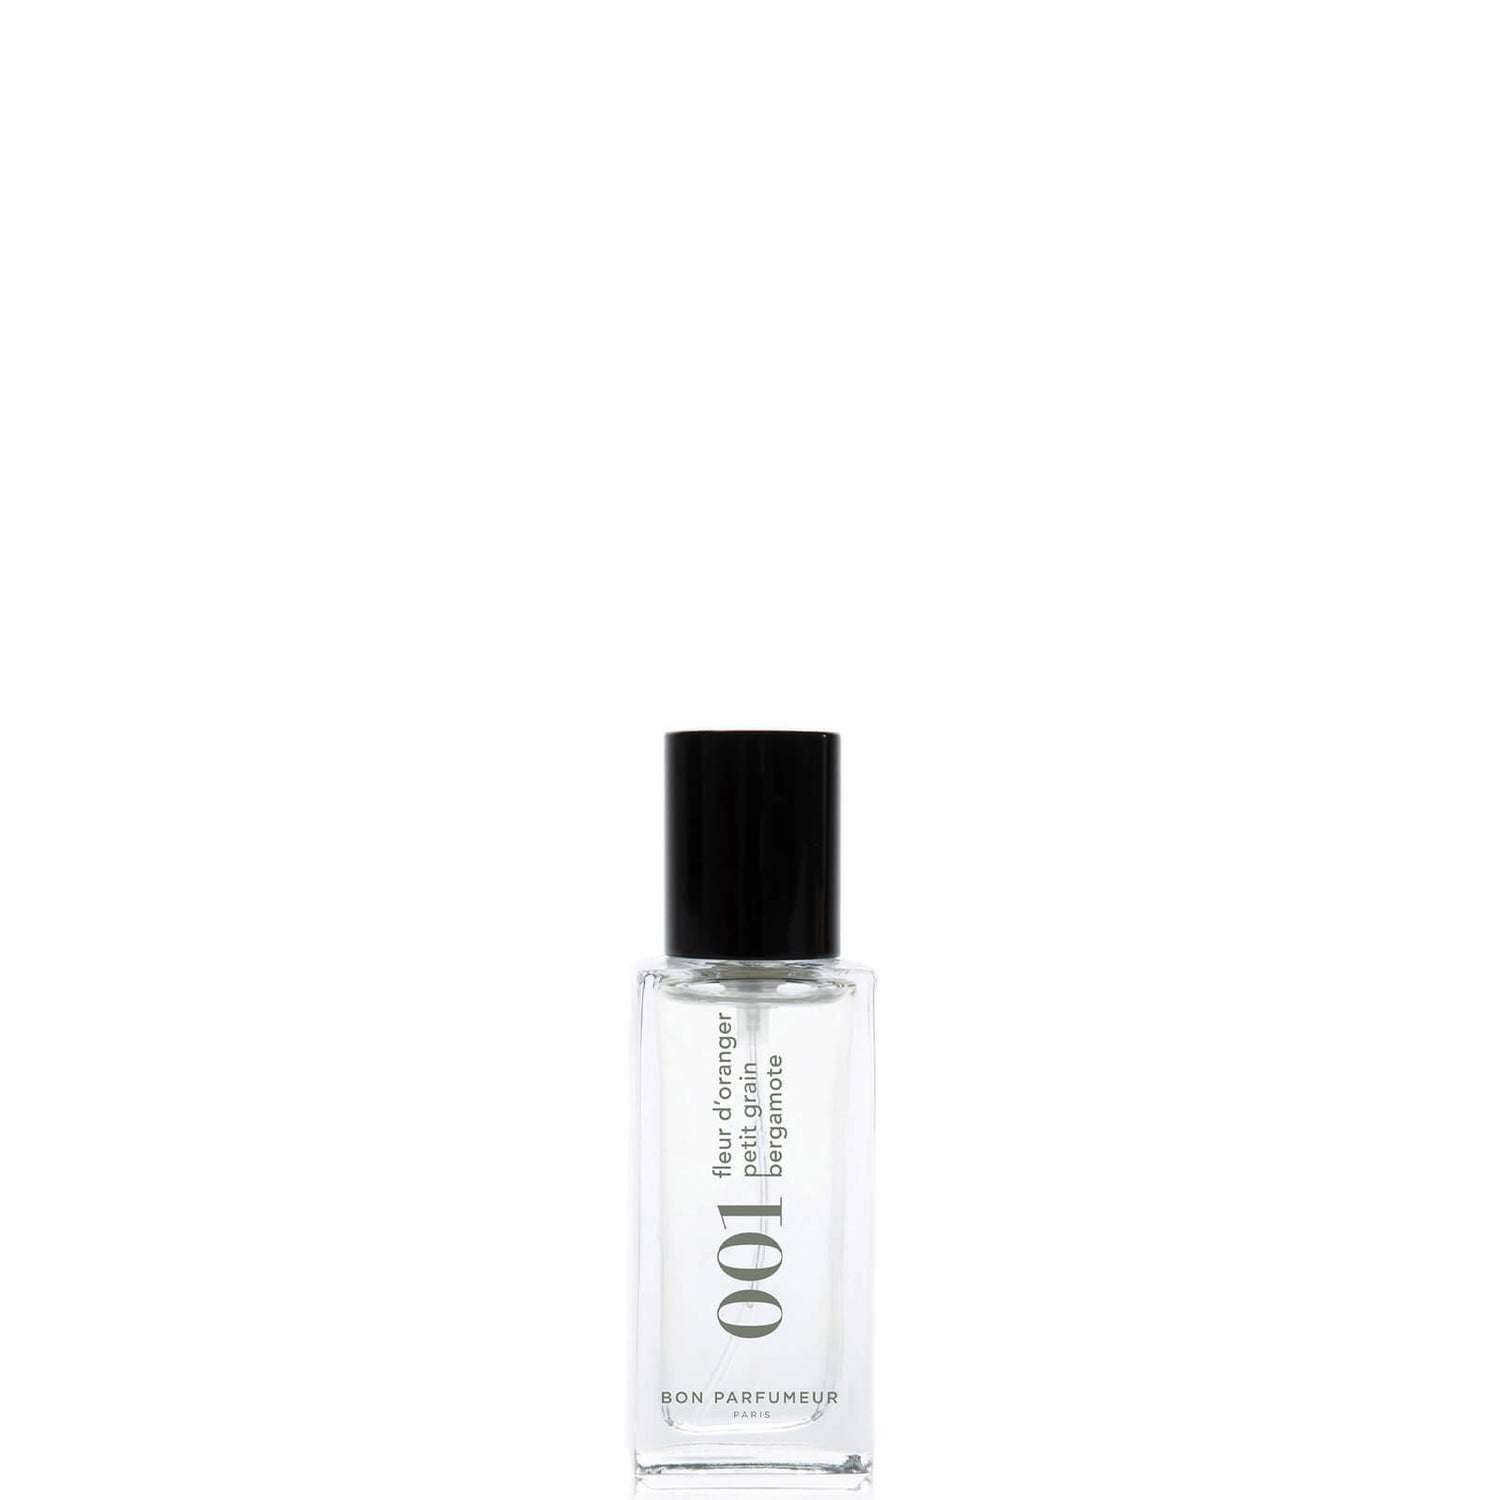 Bon Parfumeur 001 Agua de perfume de azahar y bergamota - 15ml